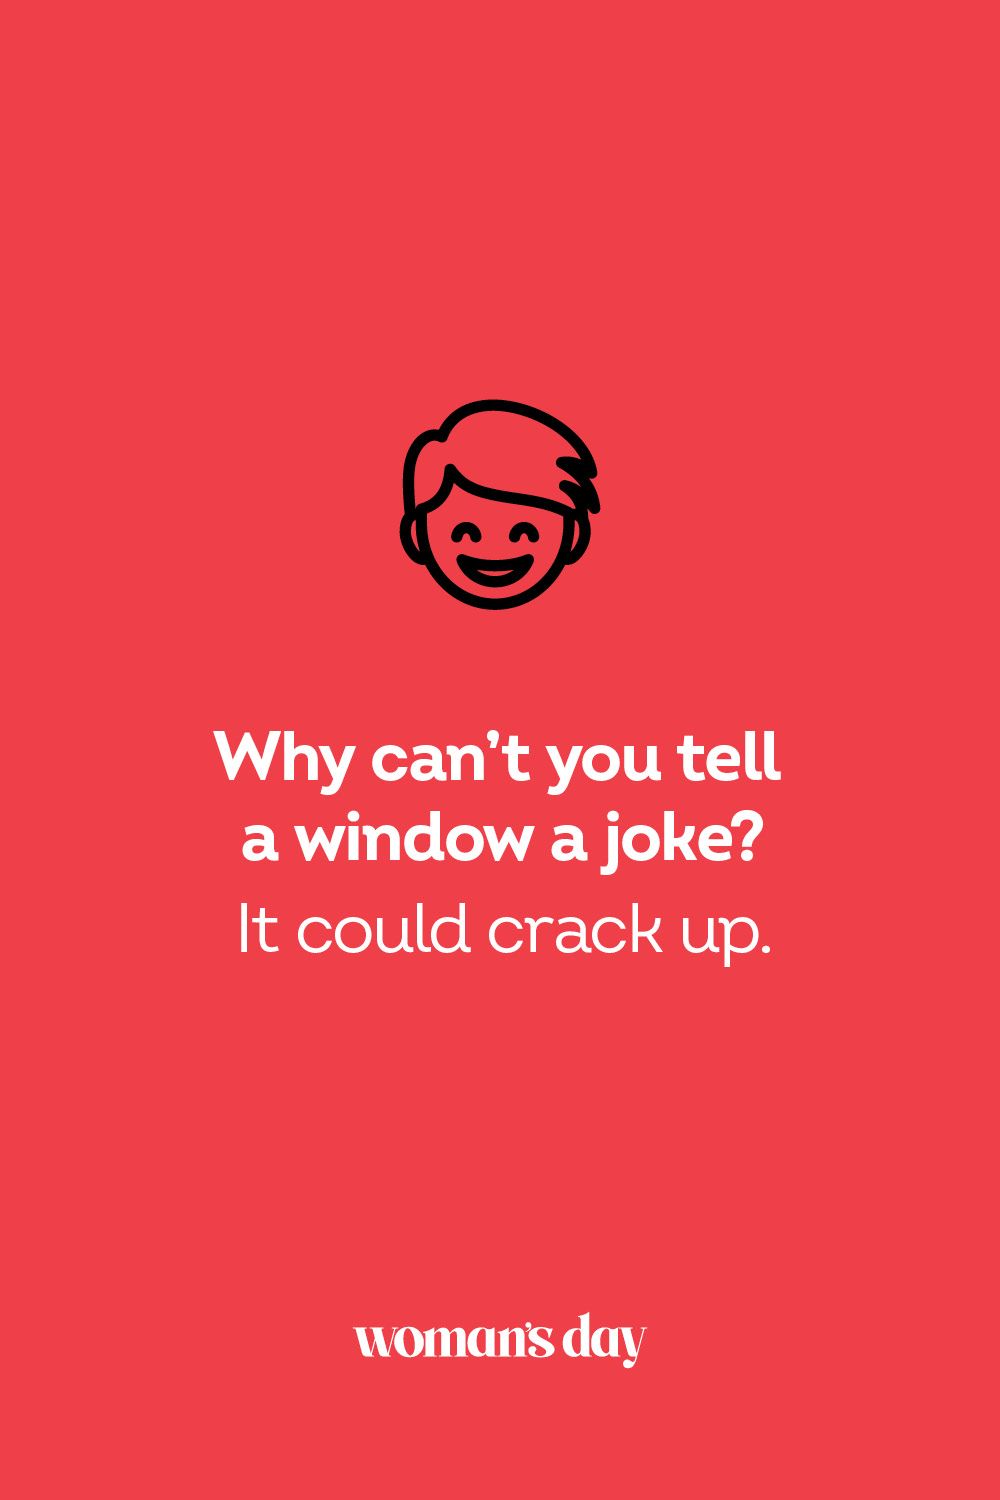 Short jokes to cheer someone up